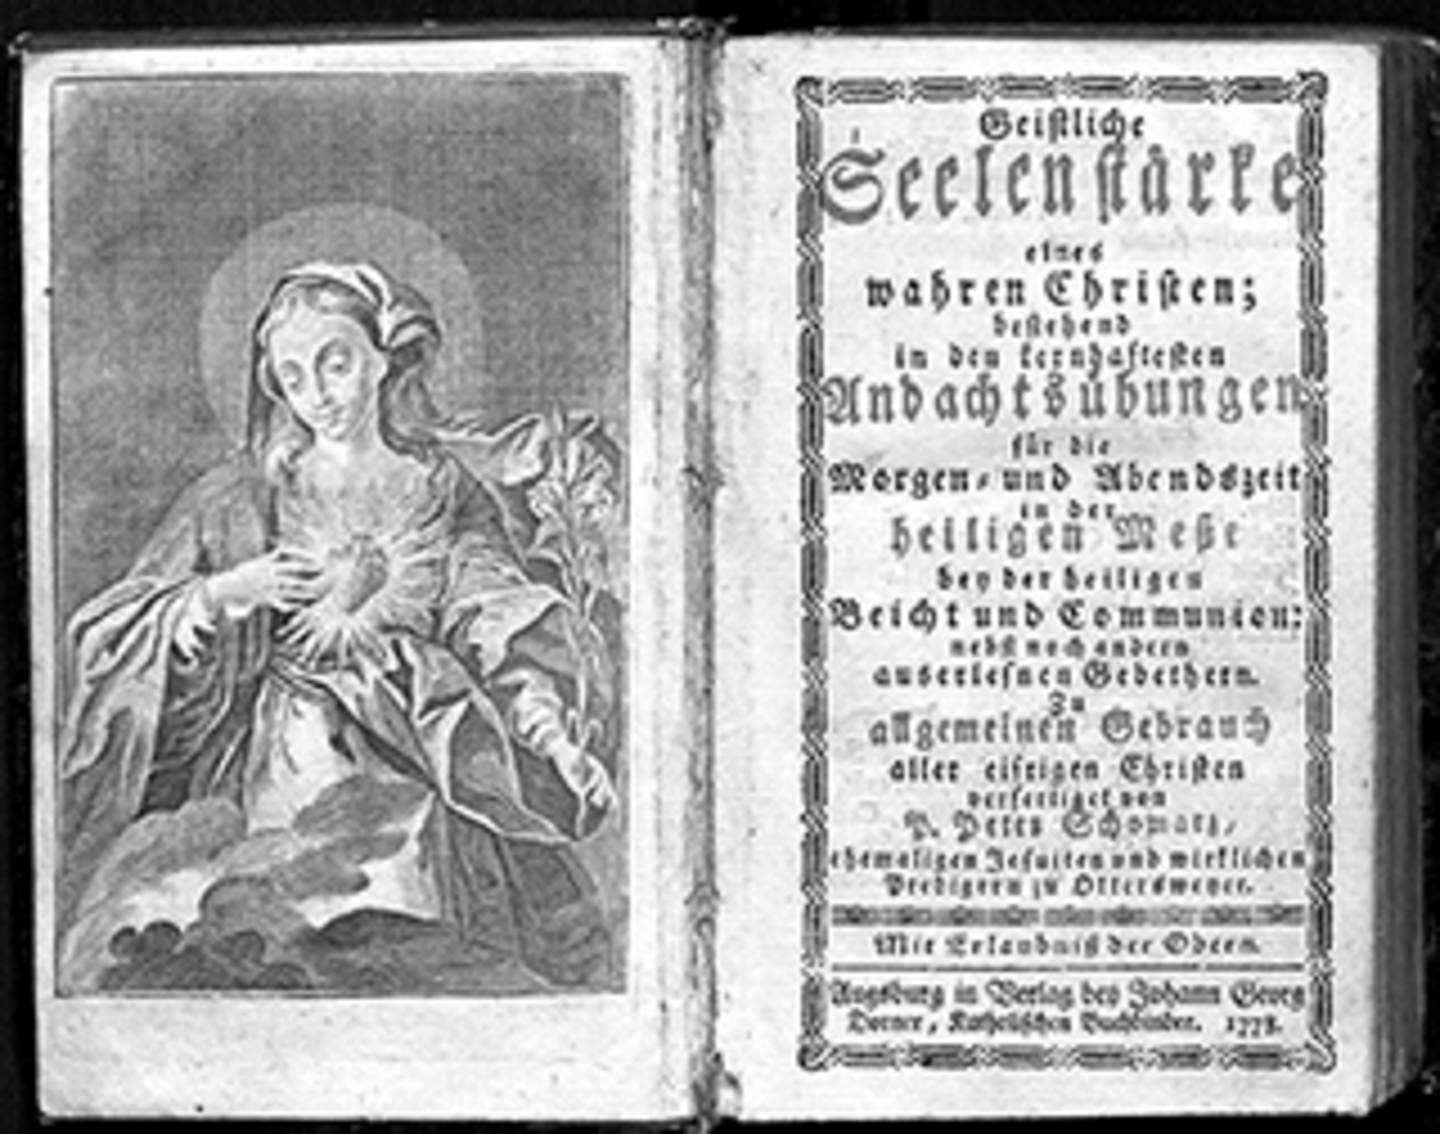 Das Titelblatt der "Geistlichen Seelenharfe eines wahren Christen" aus dem Jahr 1778. Links ist die heilige Maria dargestellt mit einem strahlenden Herzen und einer Blume in der Hand. Rechts ist ein Sprichwort dargestellt.